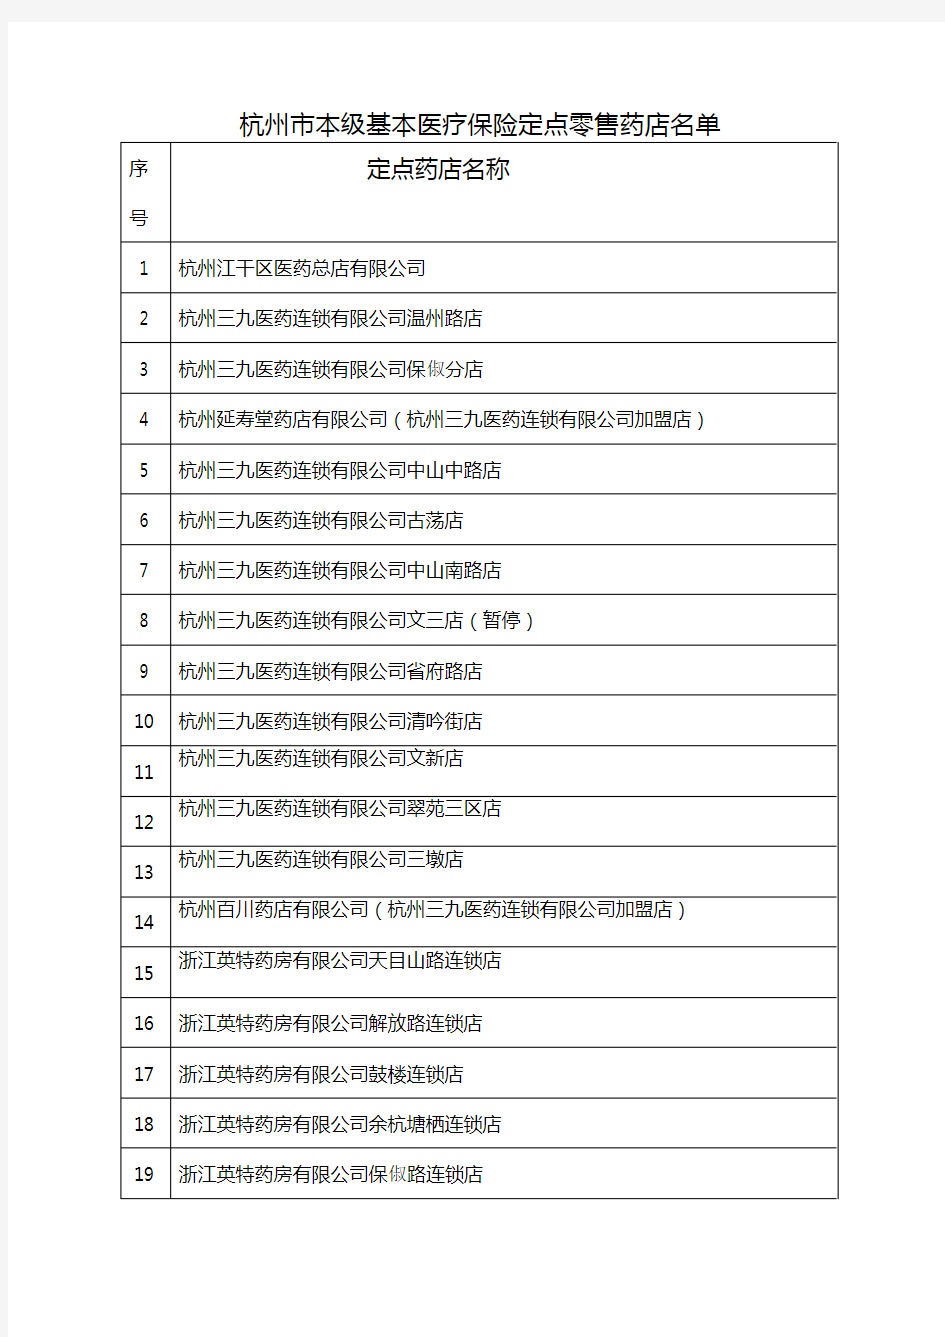 【医疗药品管理】杭州市本级基本医疗保险定点零售药店名单